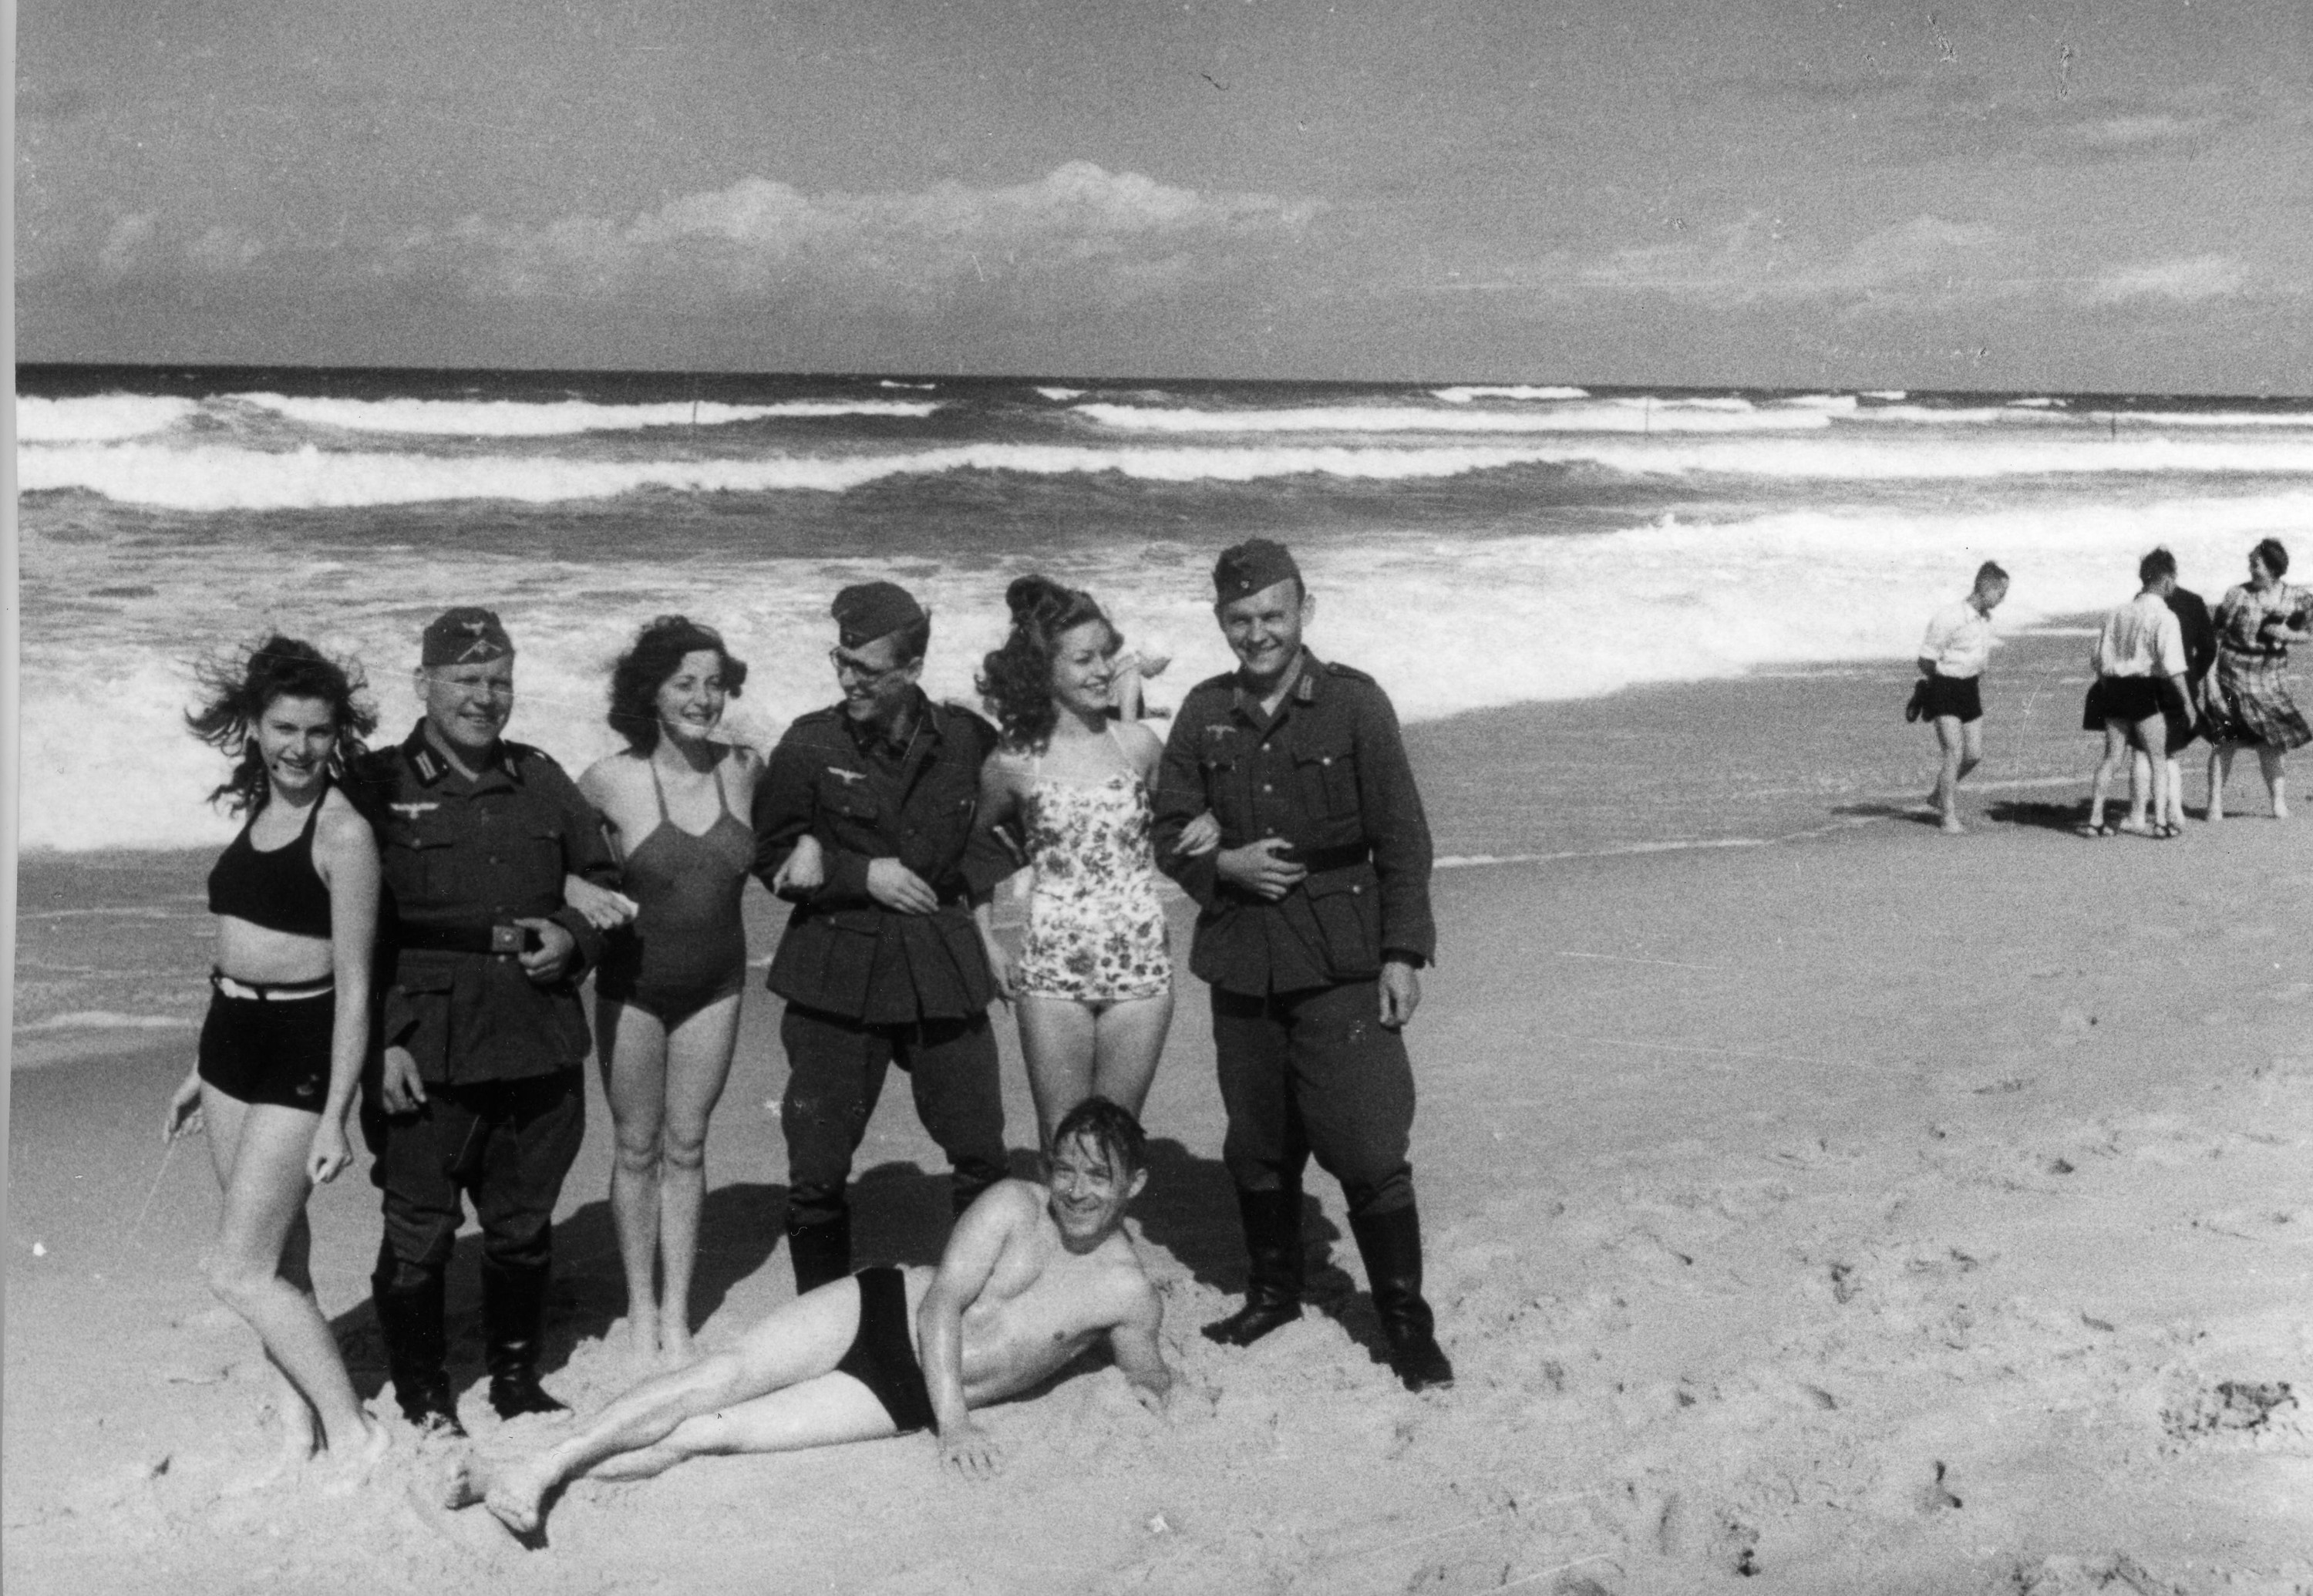 Фото из немецких борделей времен войны